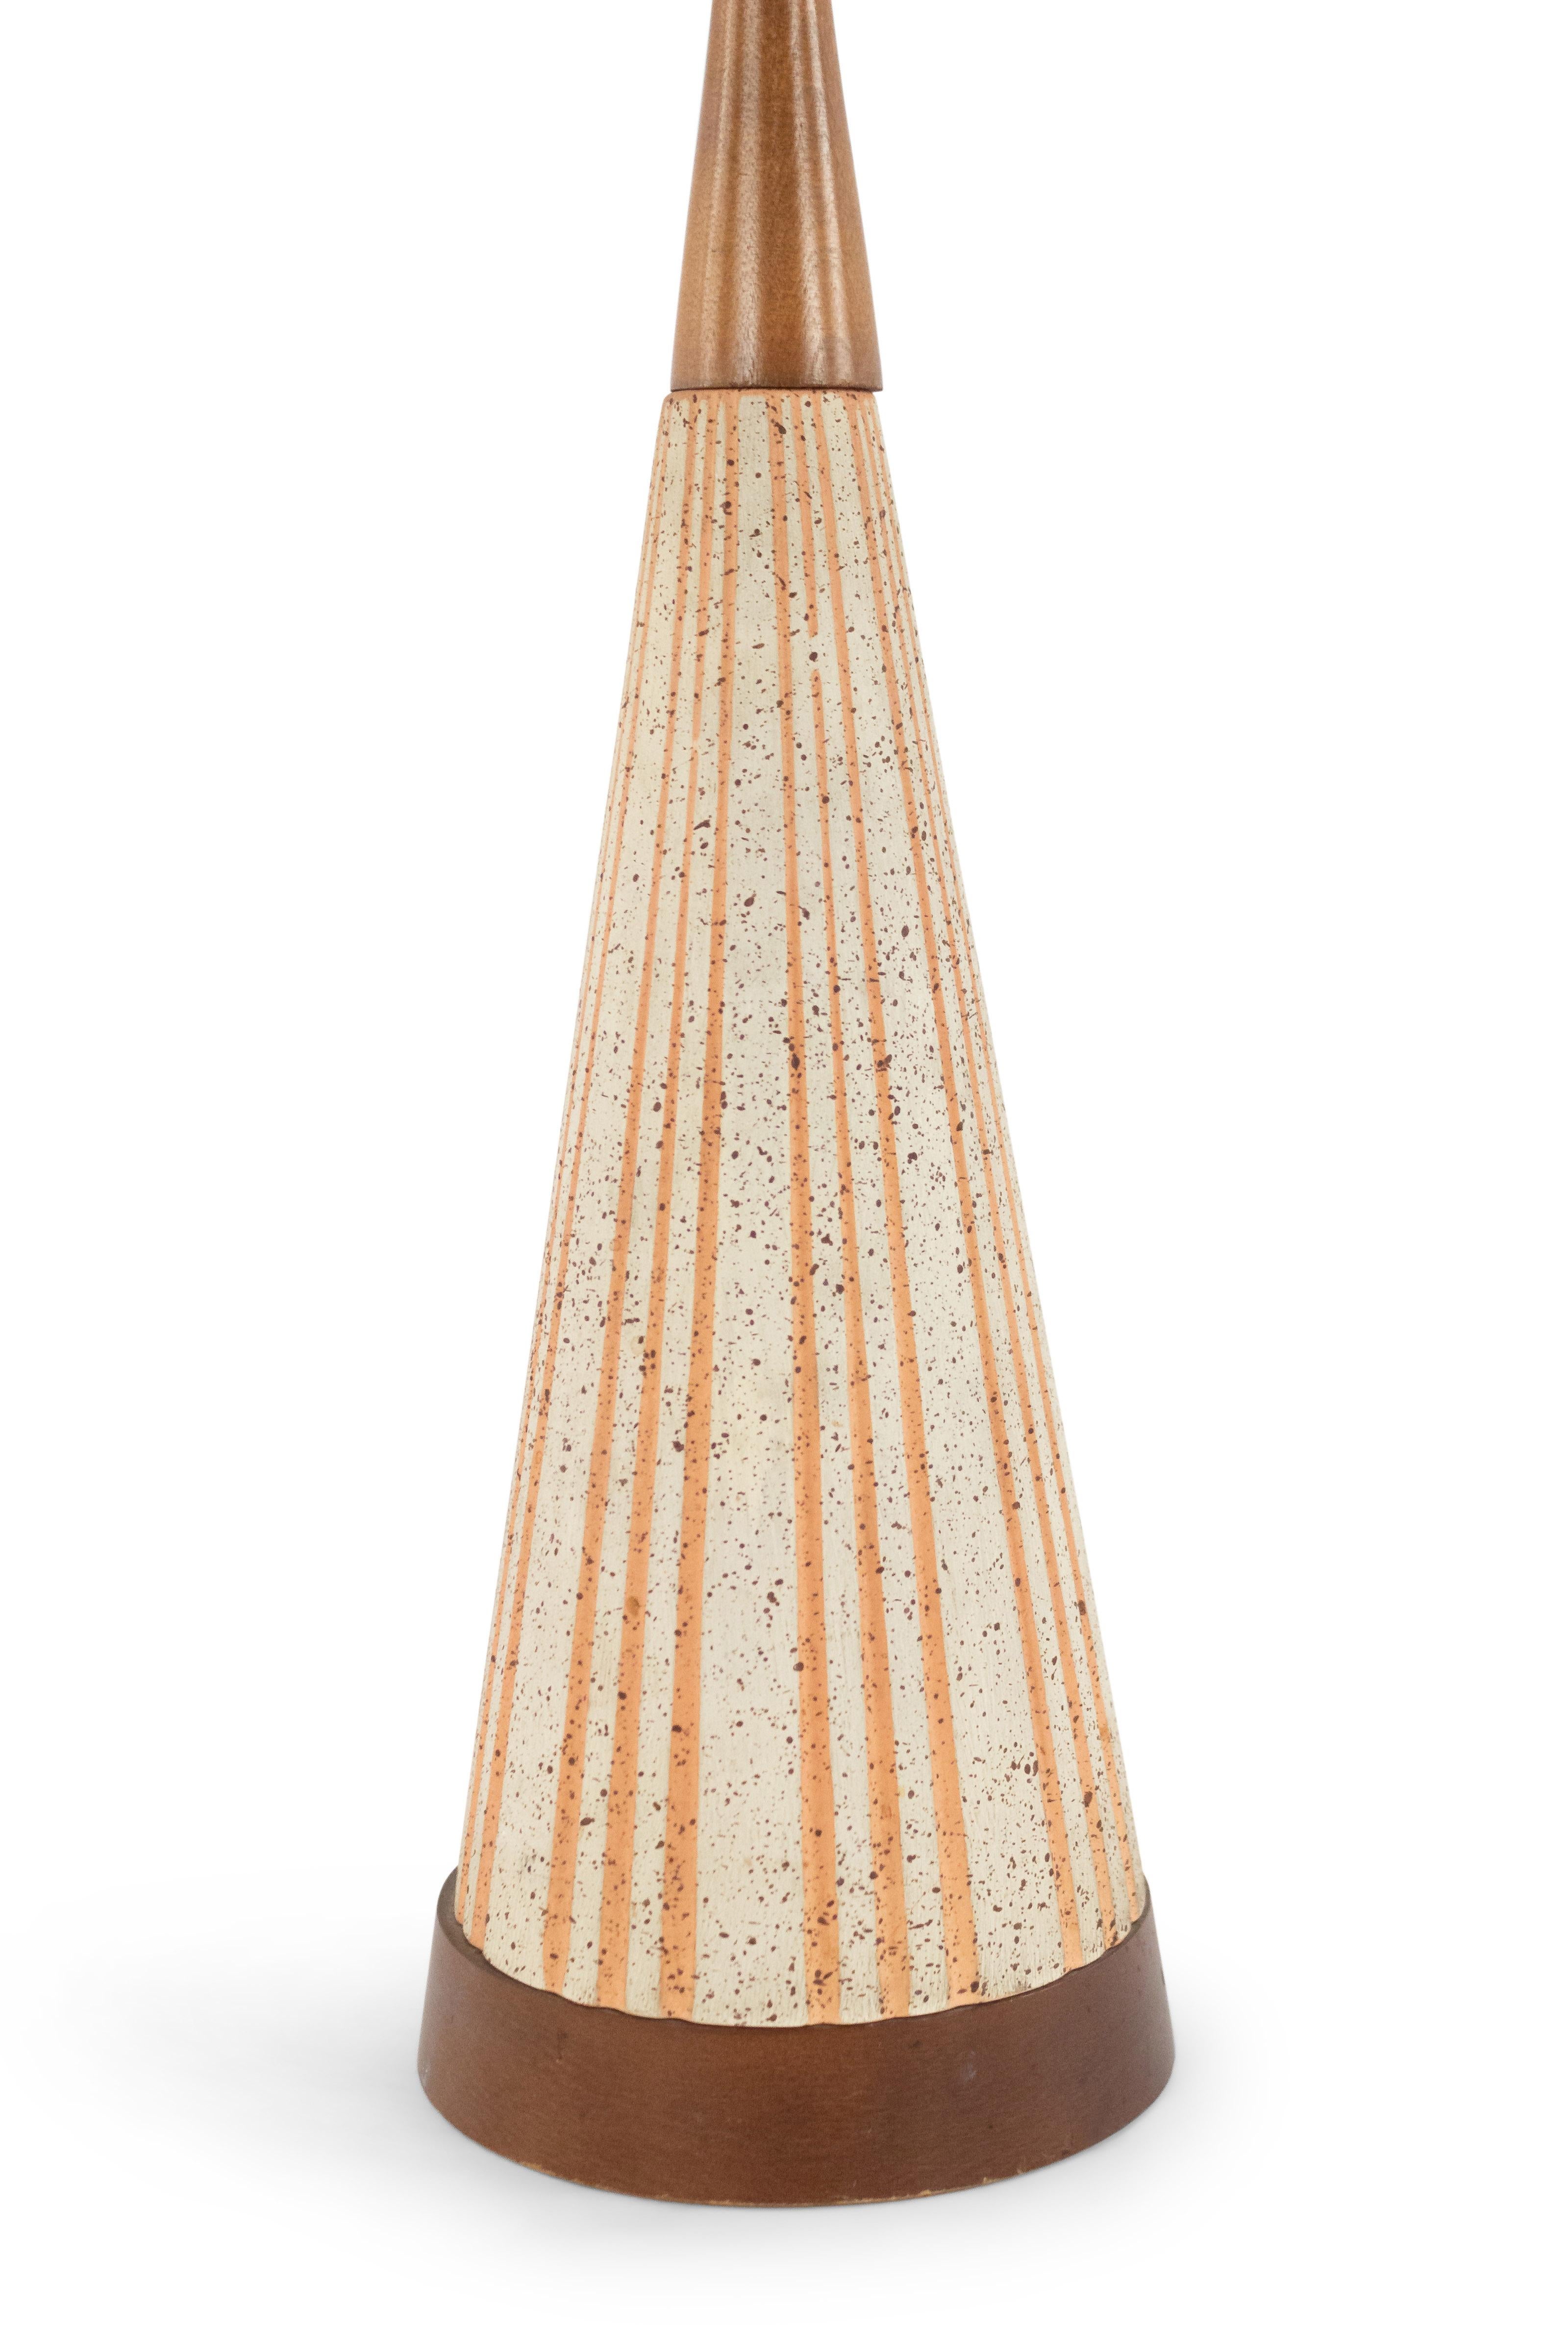 Lampe de table américaine du milieu du siècle dernier (années 1960) en céramique de forme conique beige avec un design cannelé orange reposant sur une base ronde en bois avec un sommet conique similaire.